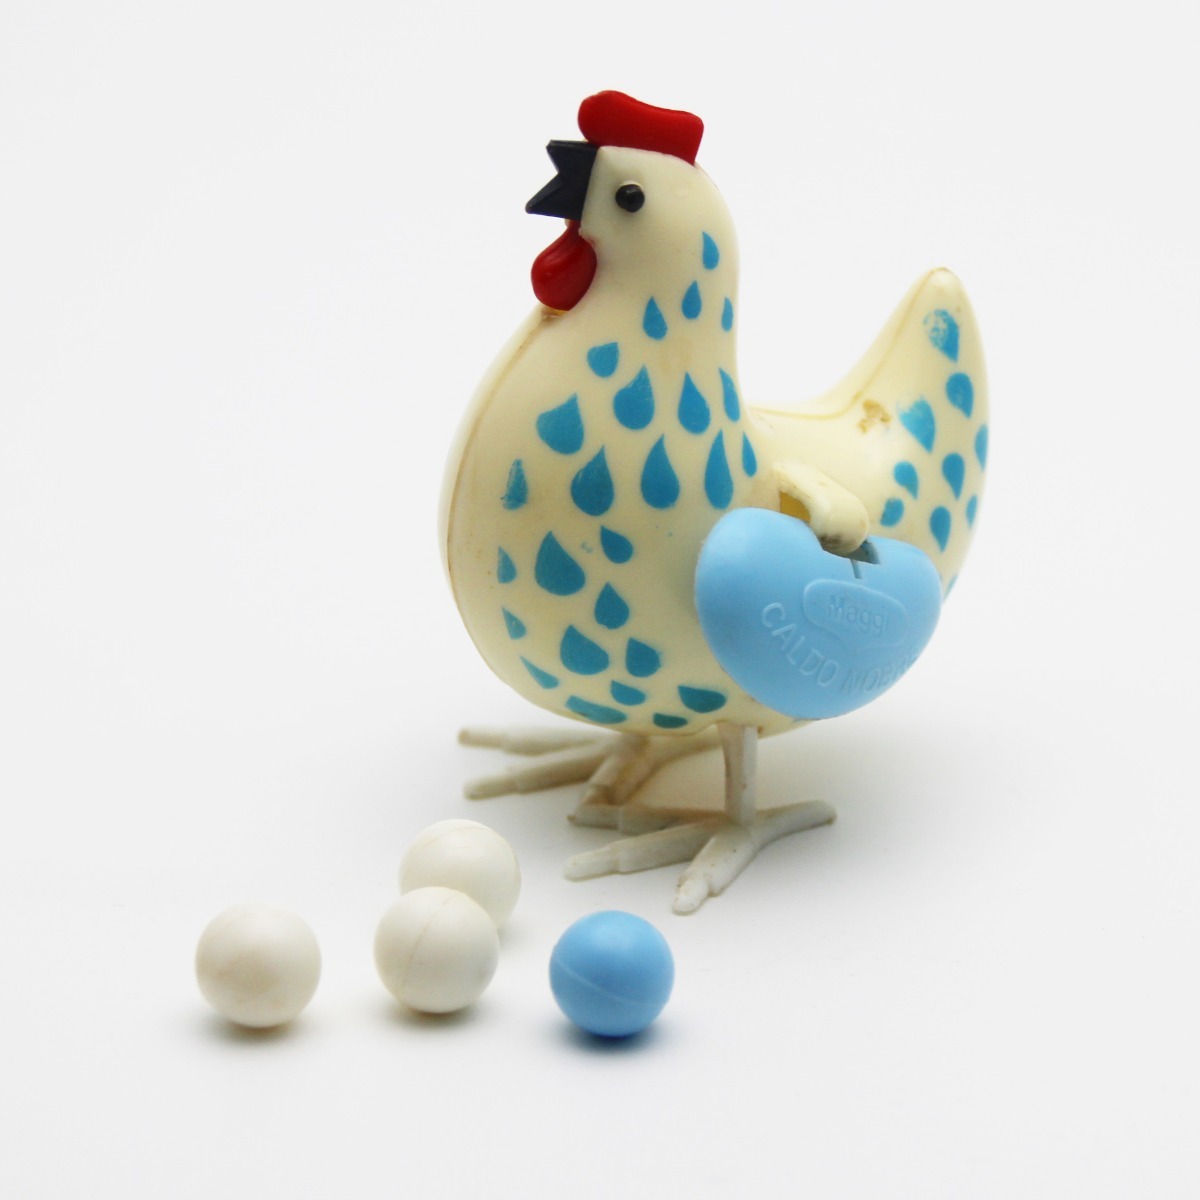 brazaesthetic on X: @CanellaMatheus e pq não jogar o jogo da galinha azul  que bota ovo e faz previsão do tempo  / X